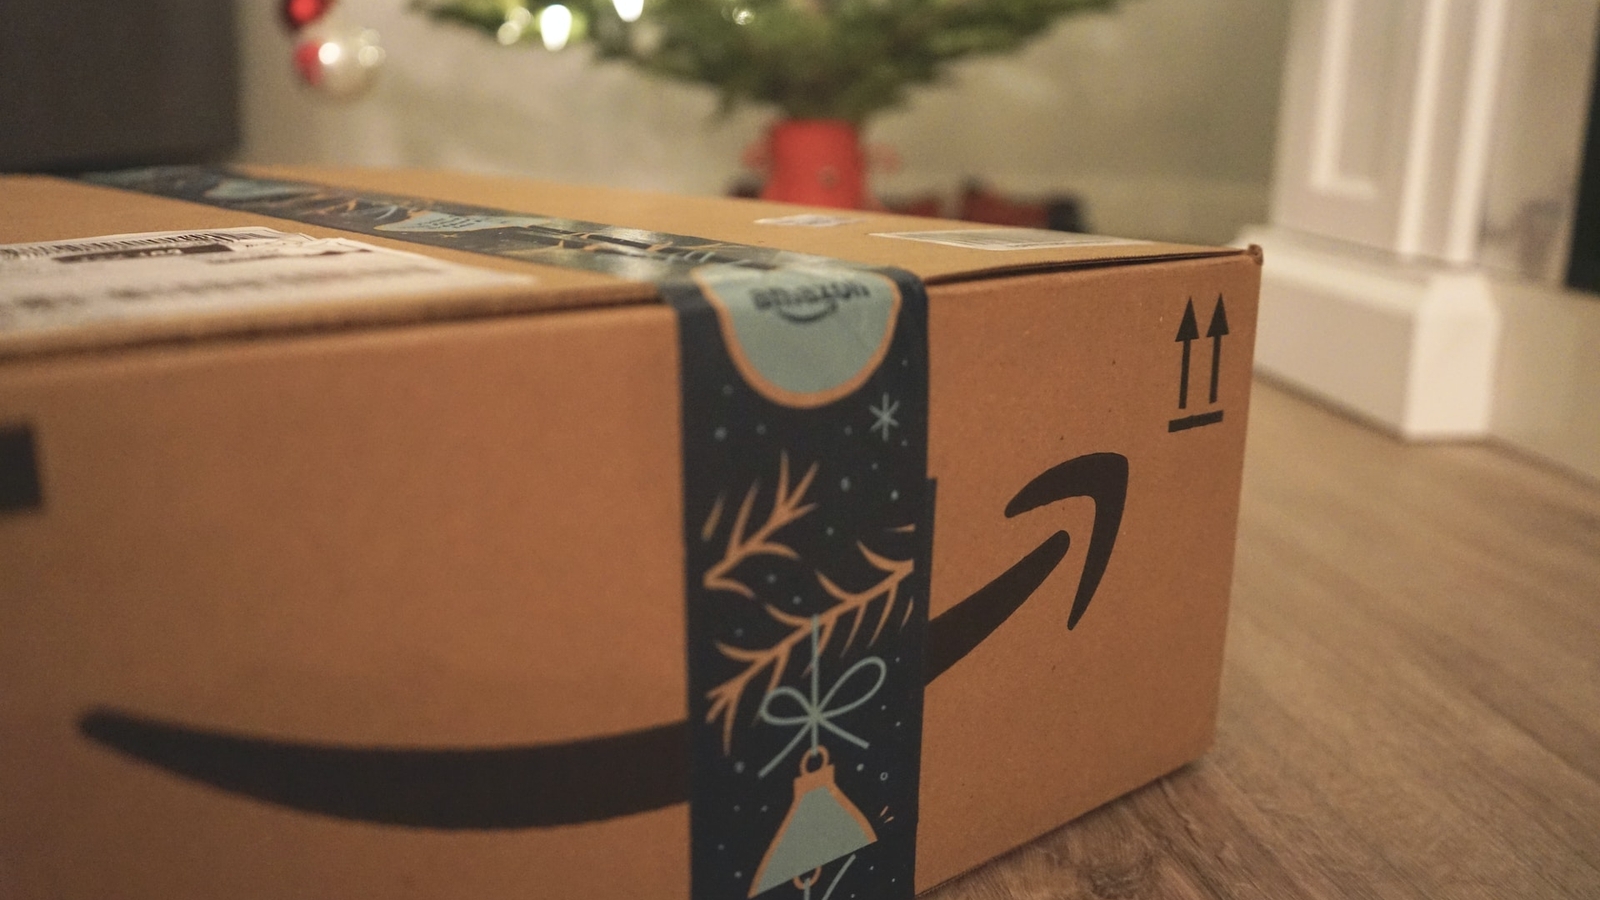 Amazon box next to Christmas tree